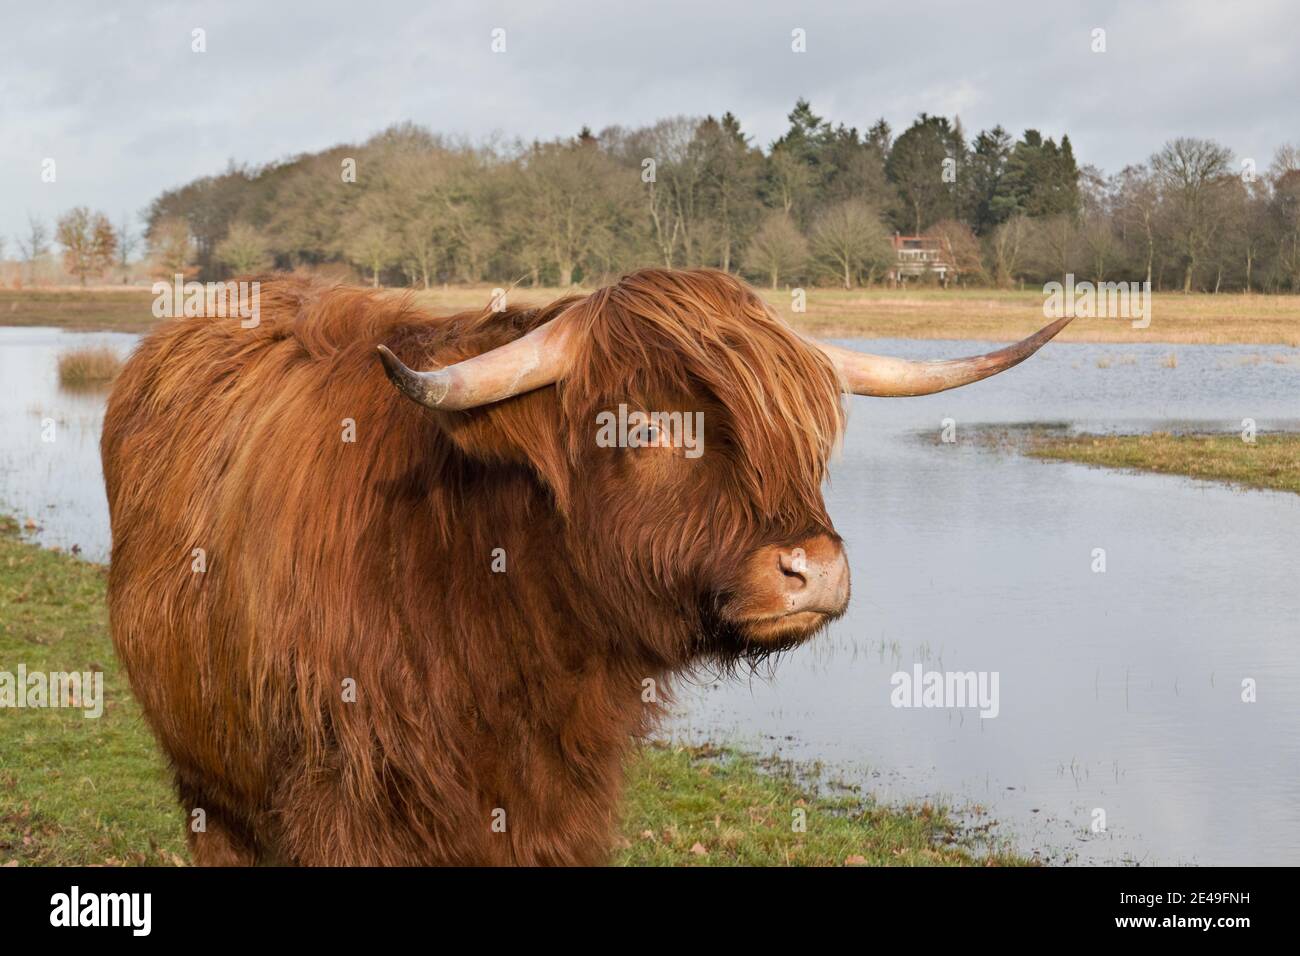 Mucca scozzese dell'altopiano con lunghi capelli rossi, corna lunghe e viso carino Foto Stock